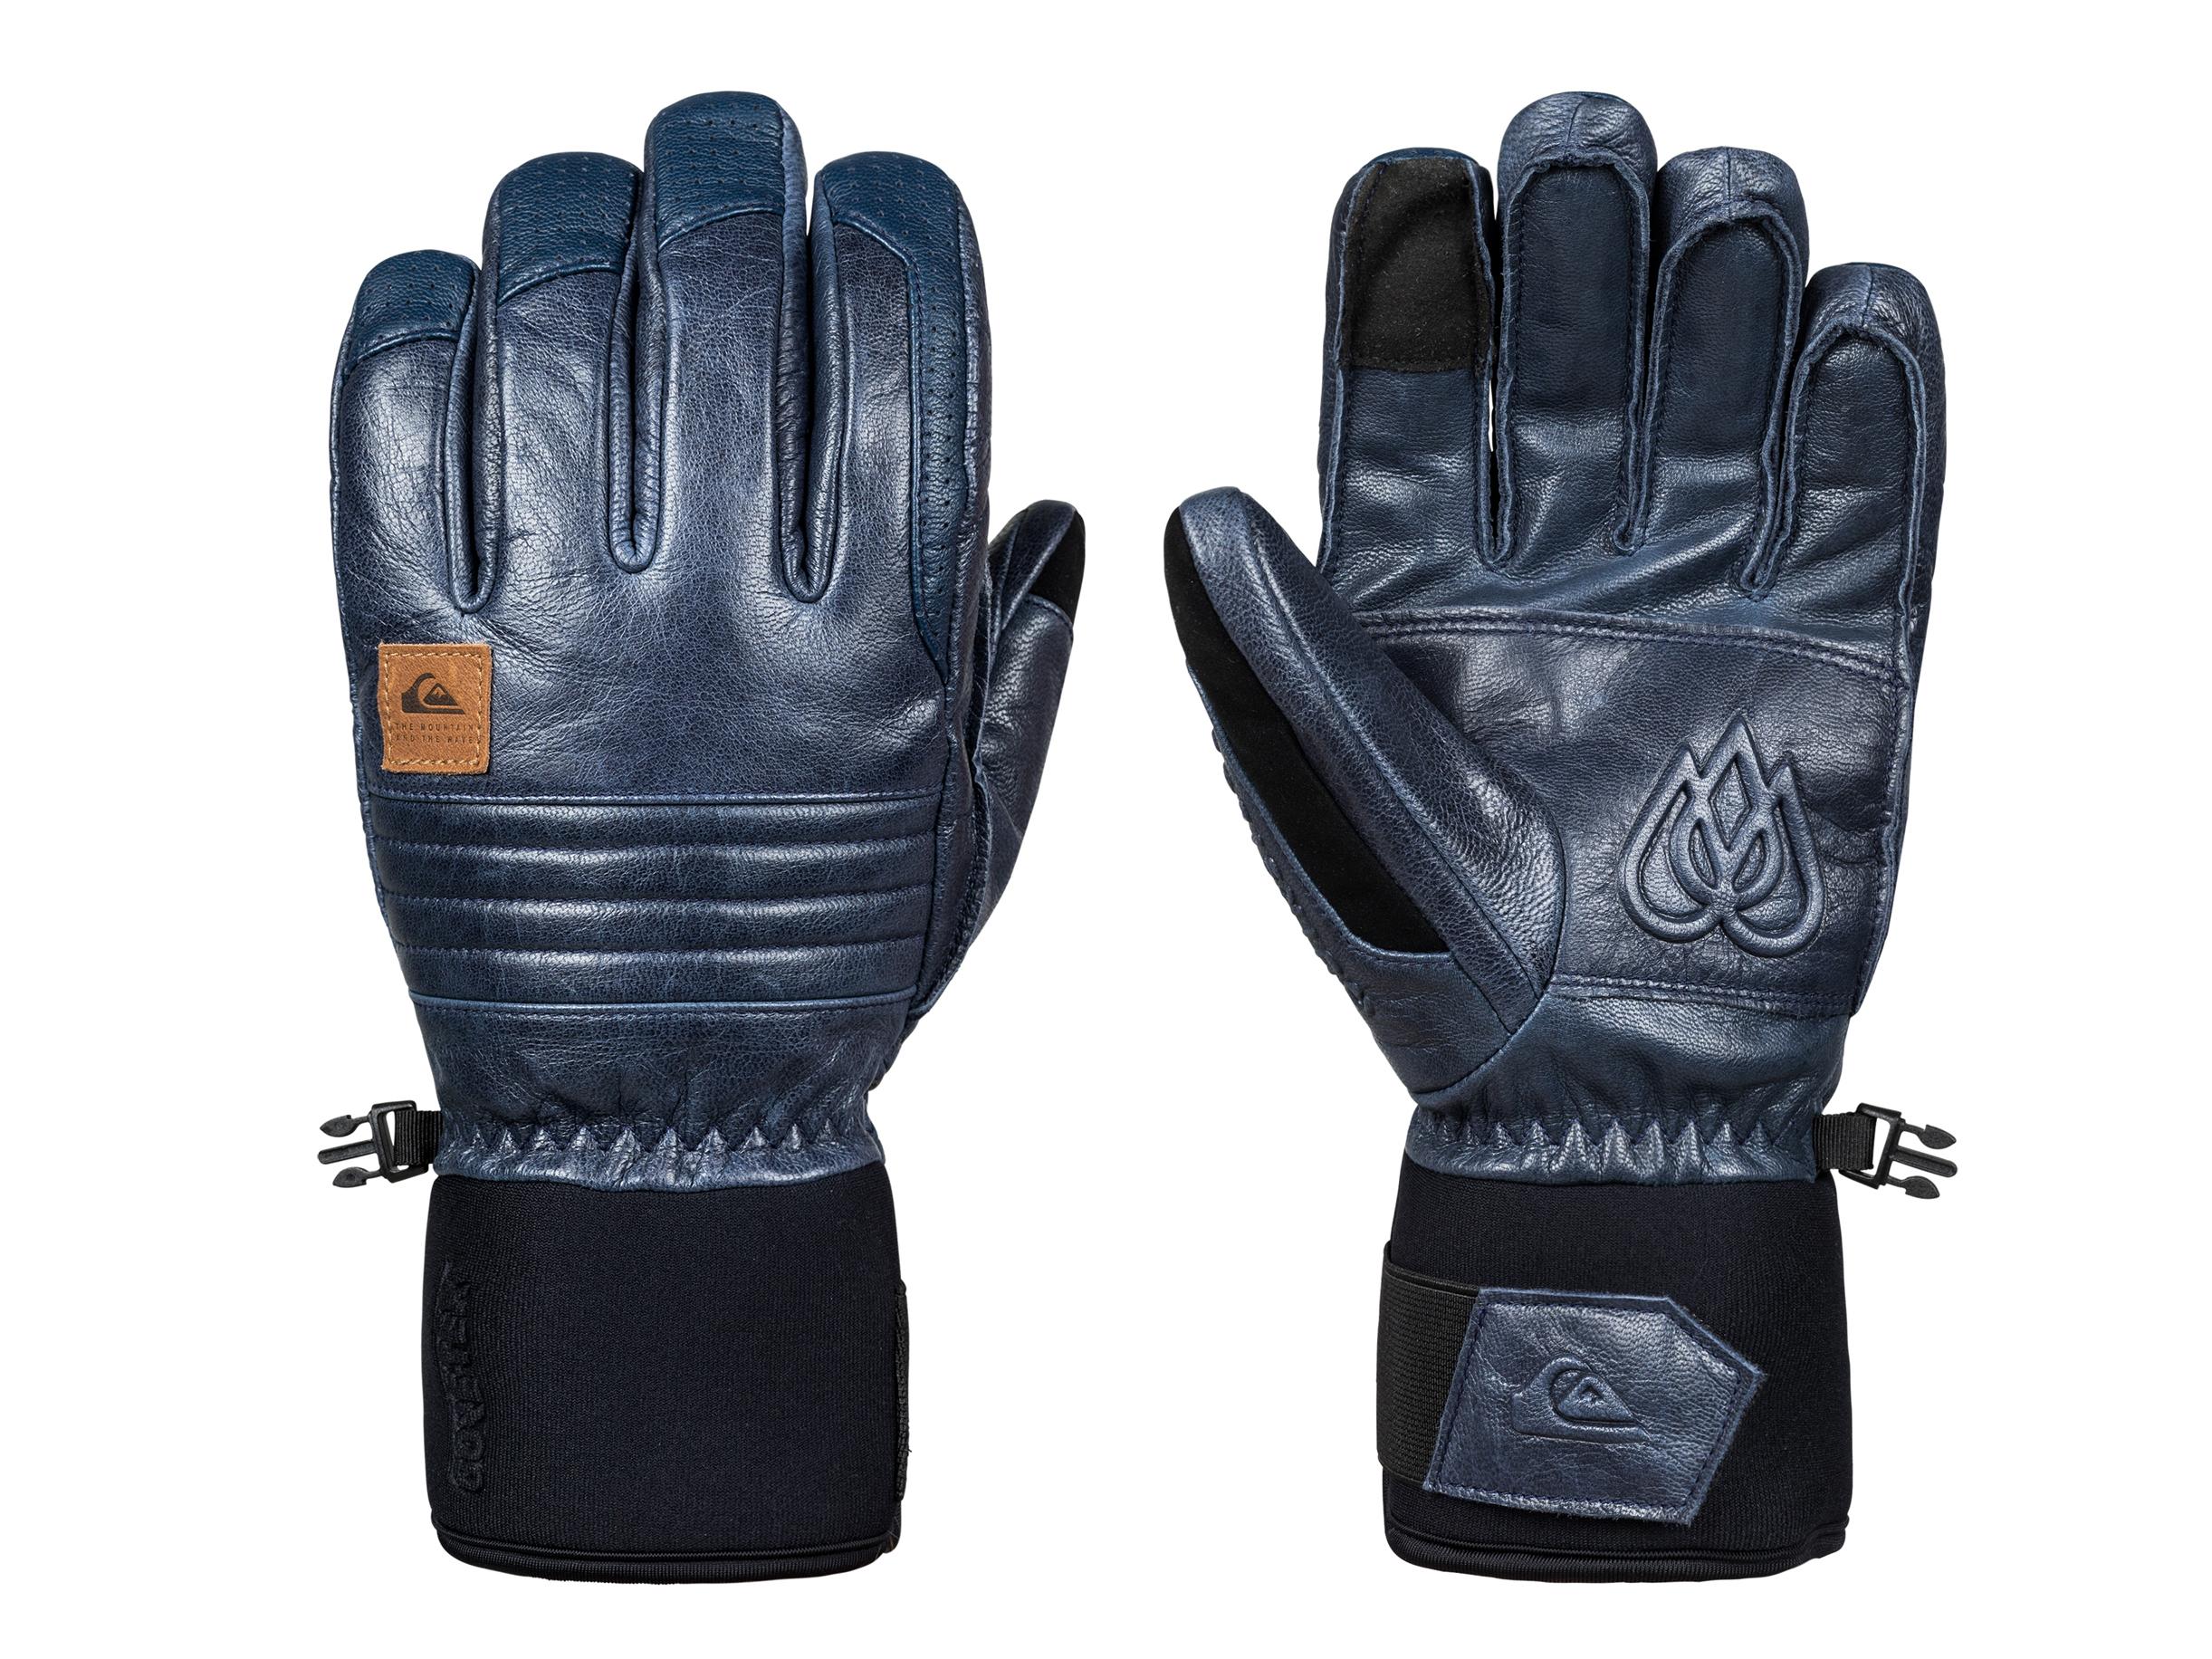 Details about   Burton Gore-Tex Glove Men's Snowboard Gloves Skiing Gloves